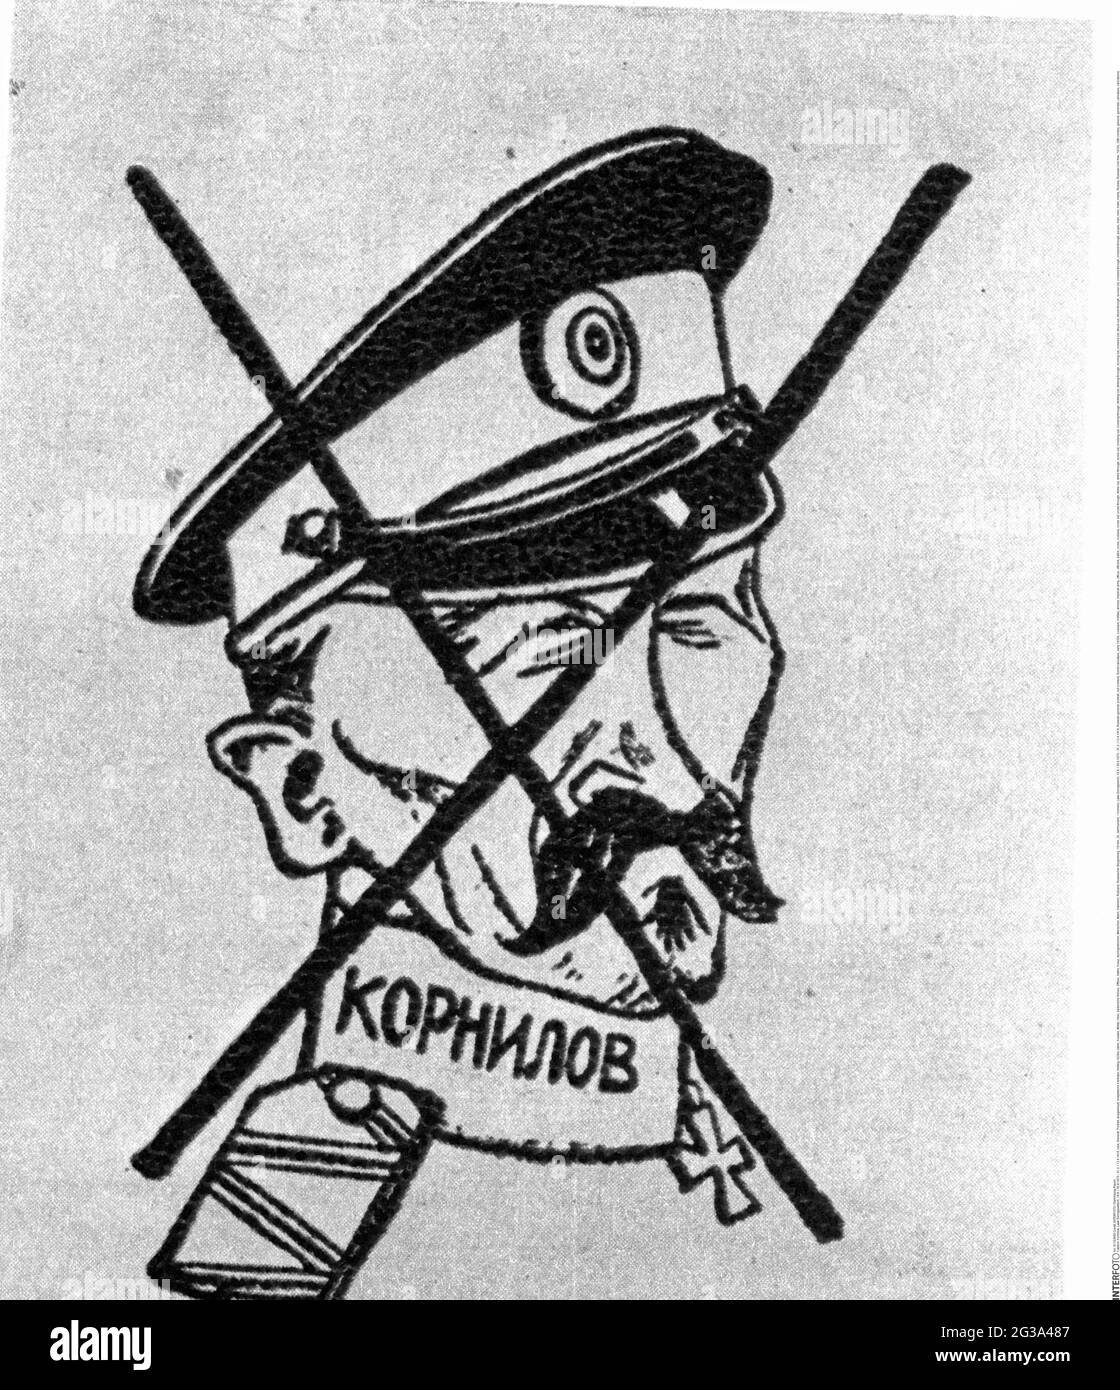 Kornilov, Lawr Georgiyevitch, 18.8. / 30.8.1870 - 31.3. / 13.4.1918, russe général, portrait, INFO-AUTORISATION-DROITS-SUPPLÉMENTAIRES-NON-DISPONIBLE Banque D'Images